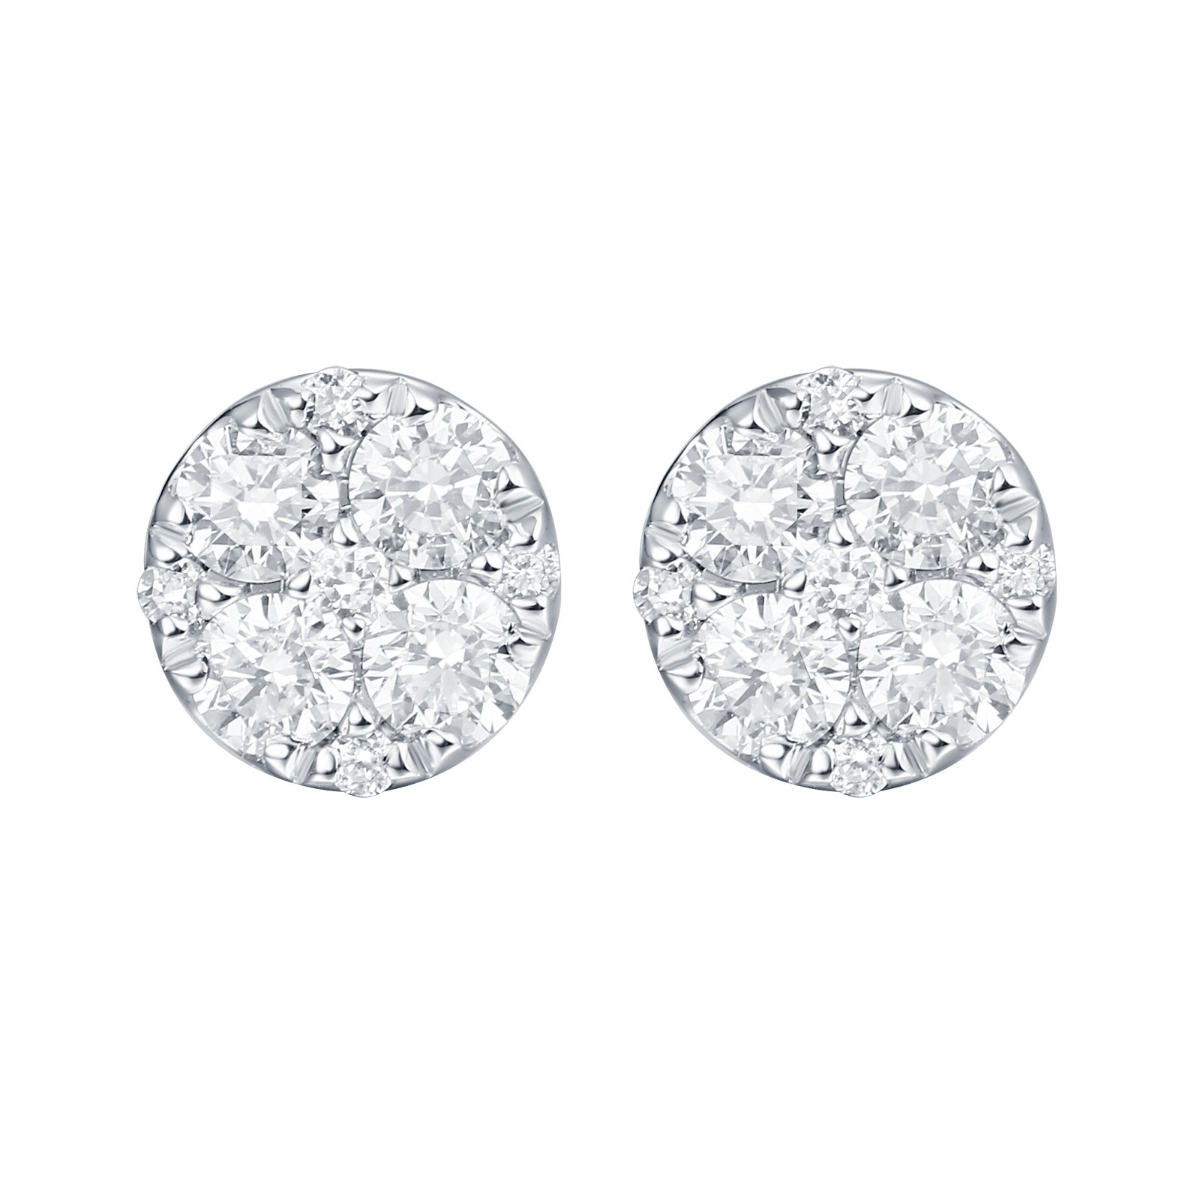 E35787WHT – 18K White Gold Diamond Earring, 0.52 TCW